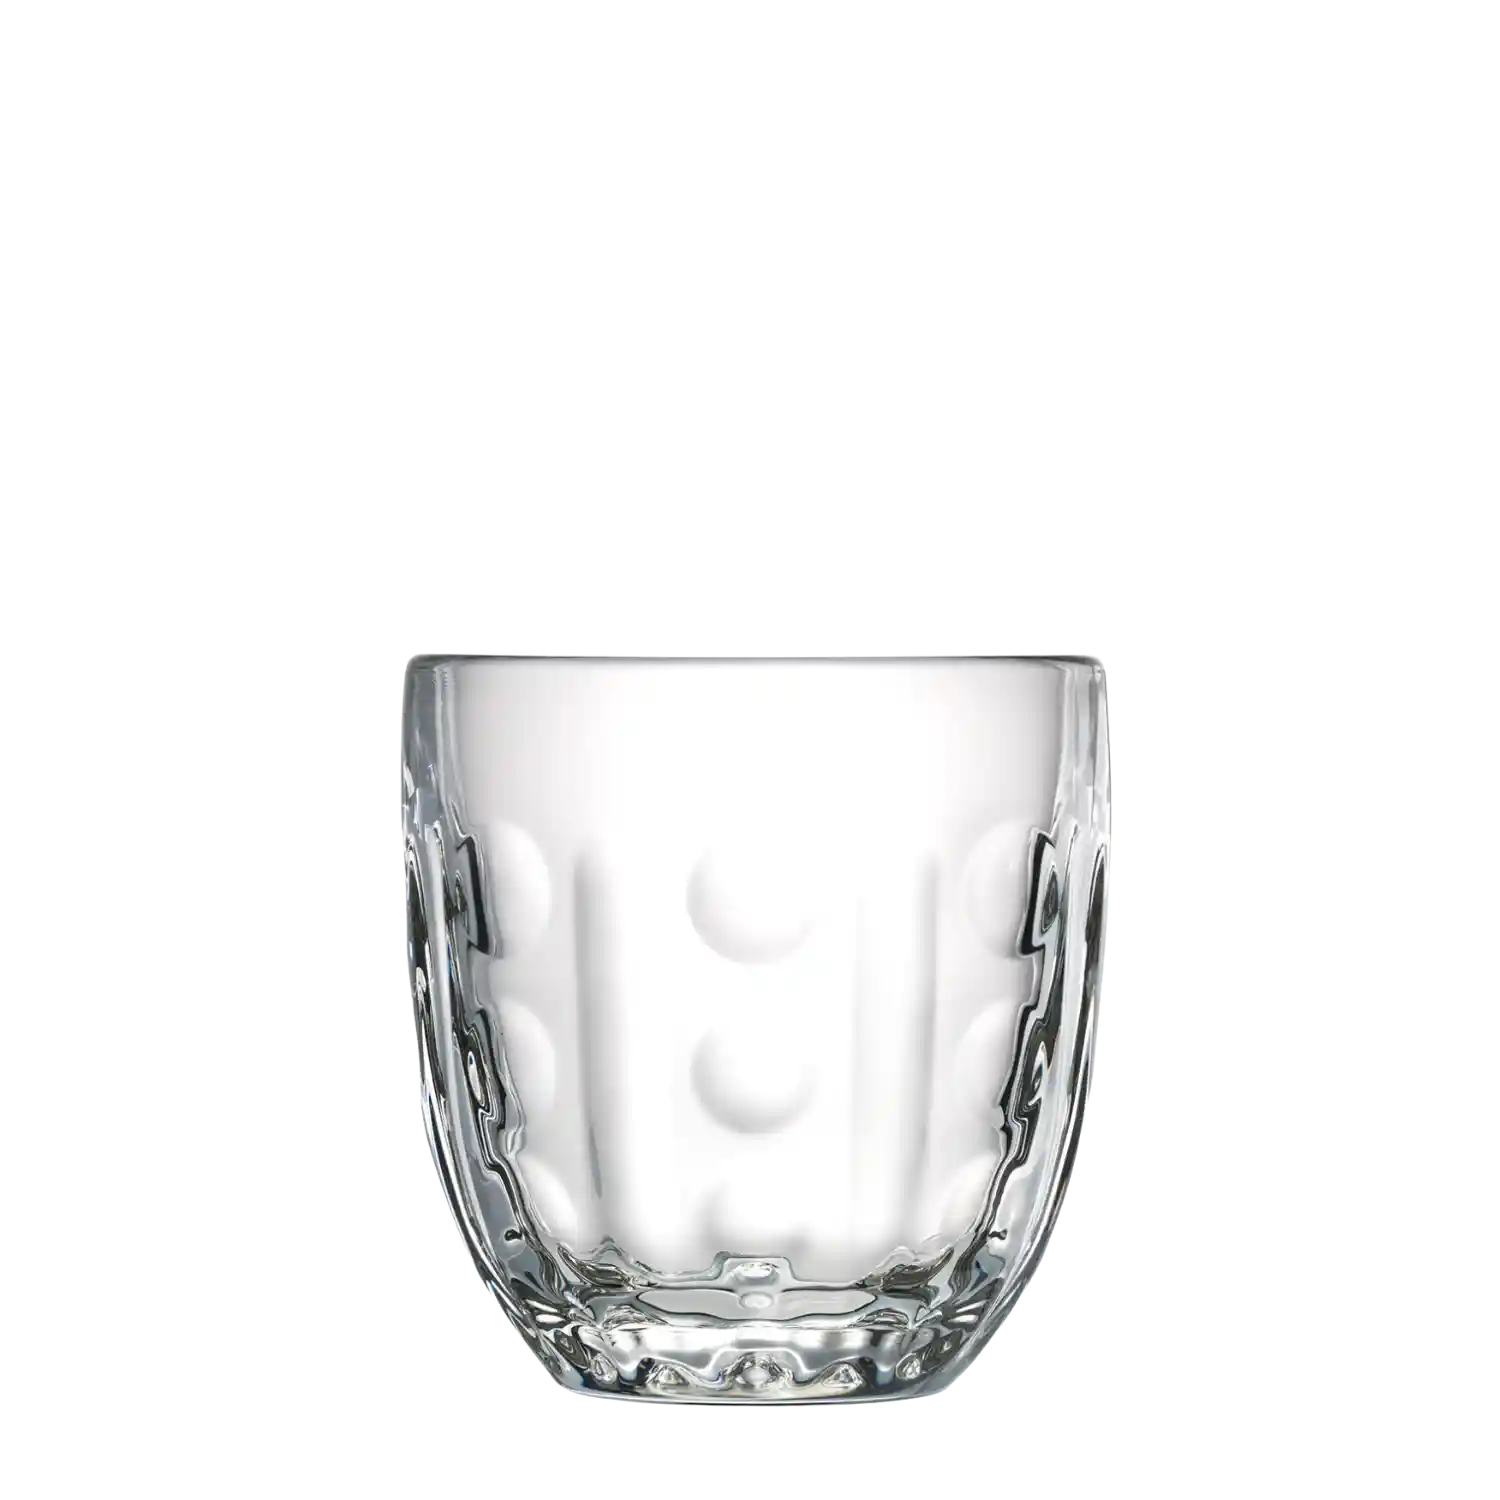 Troquet 4 glasses set